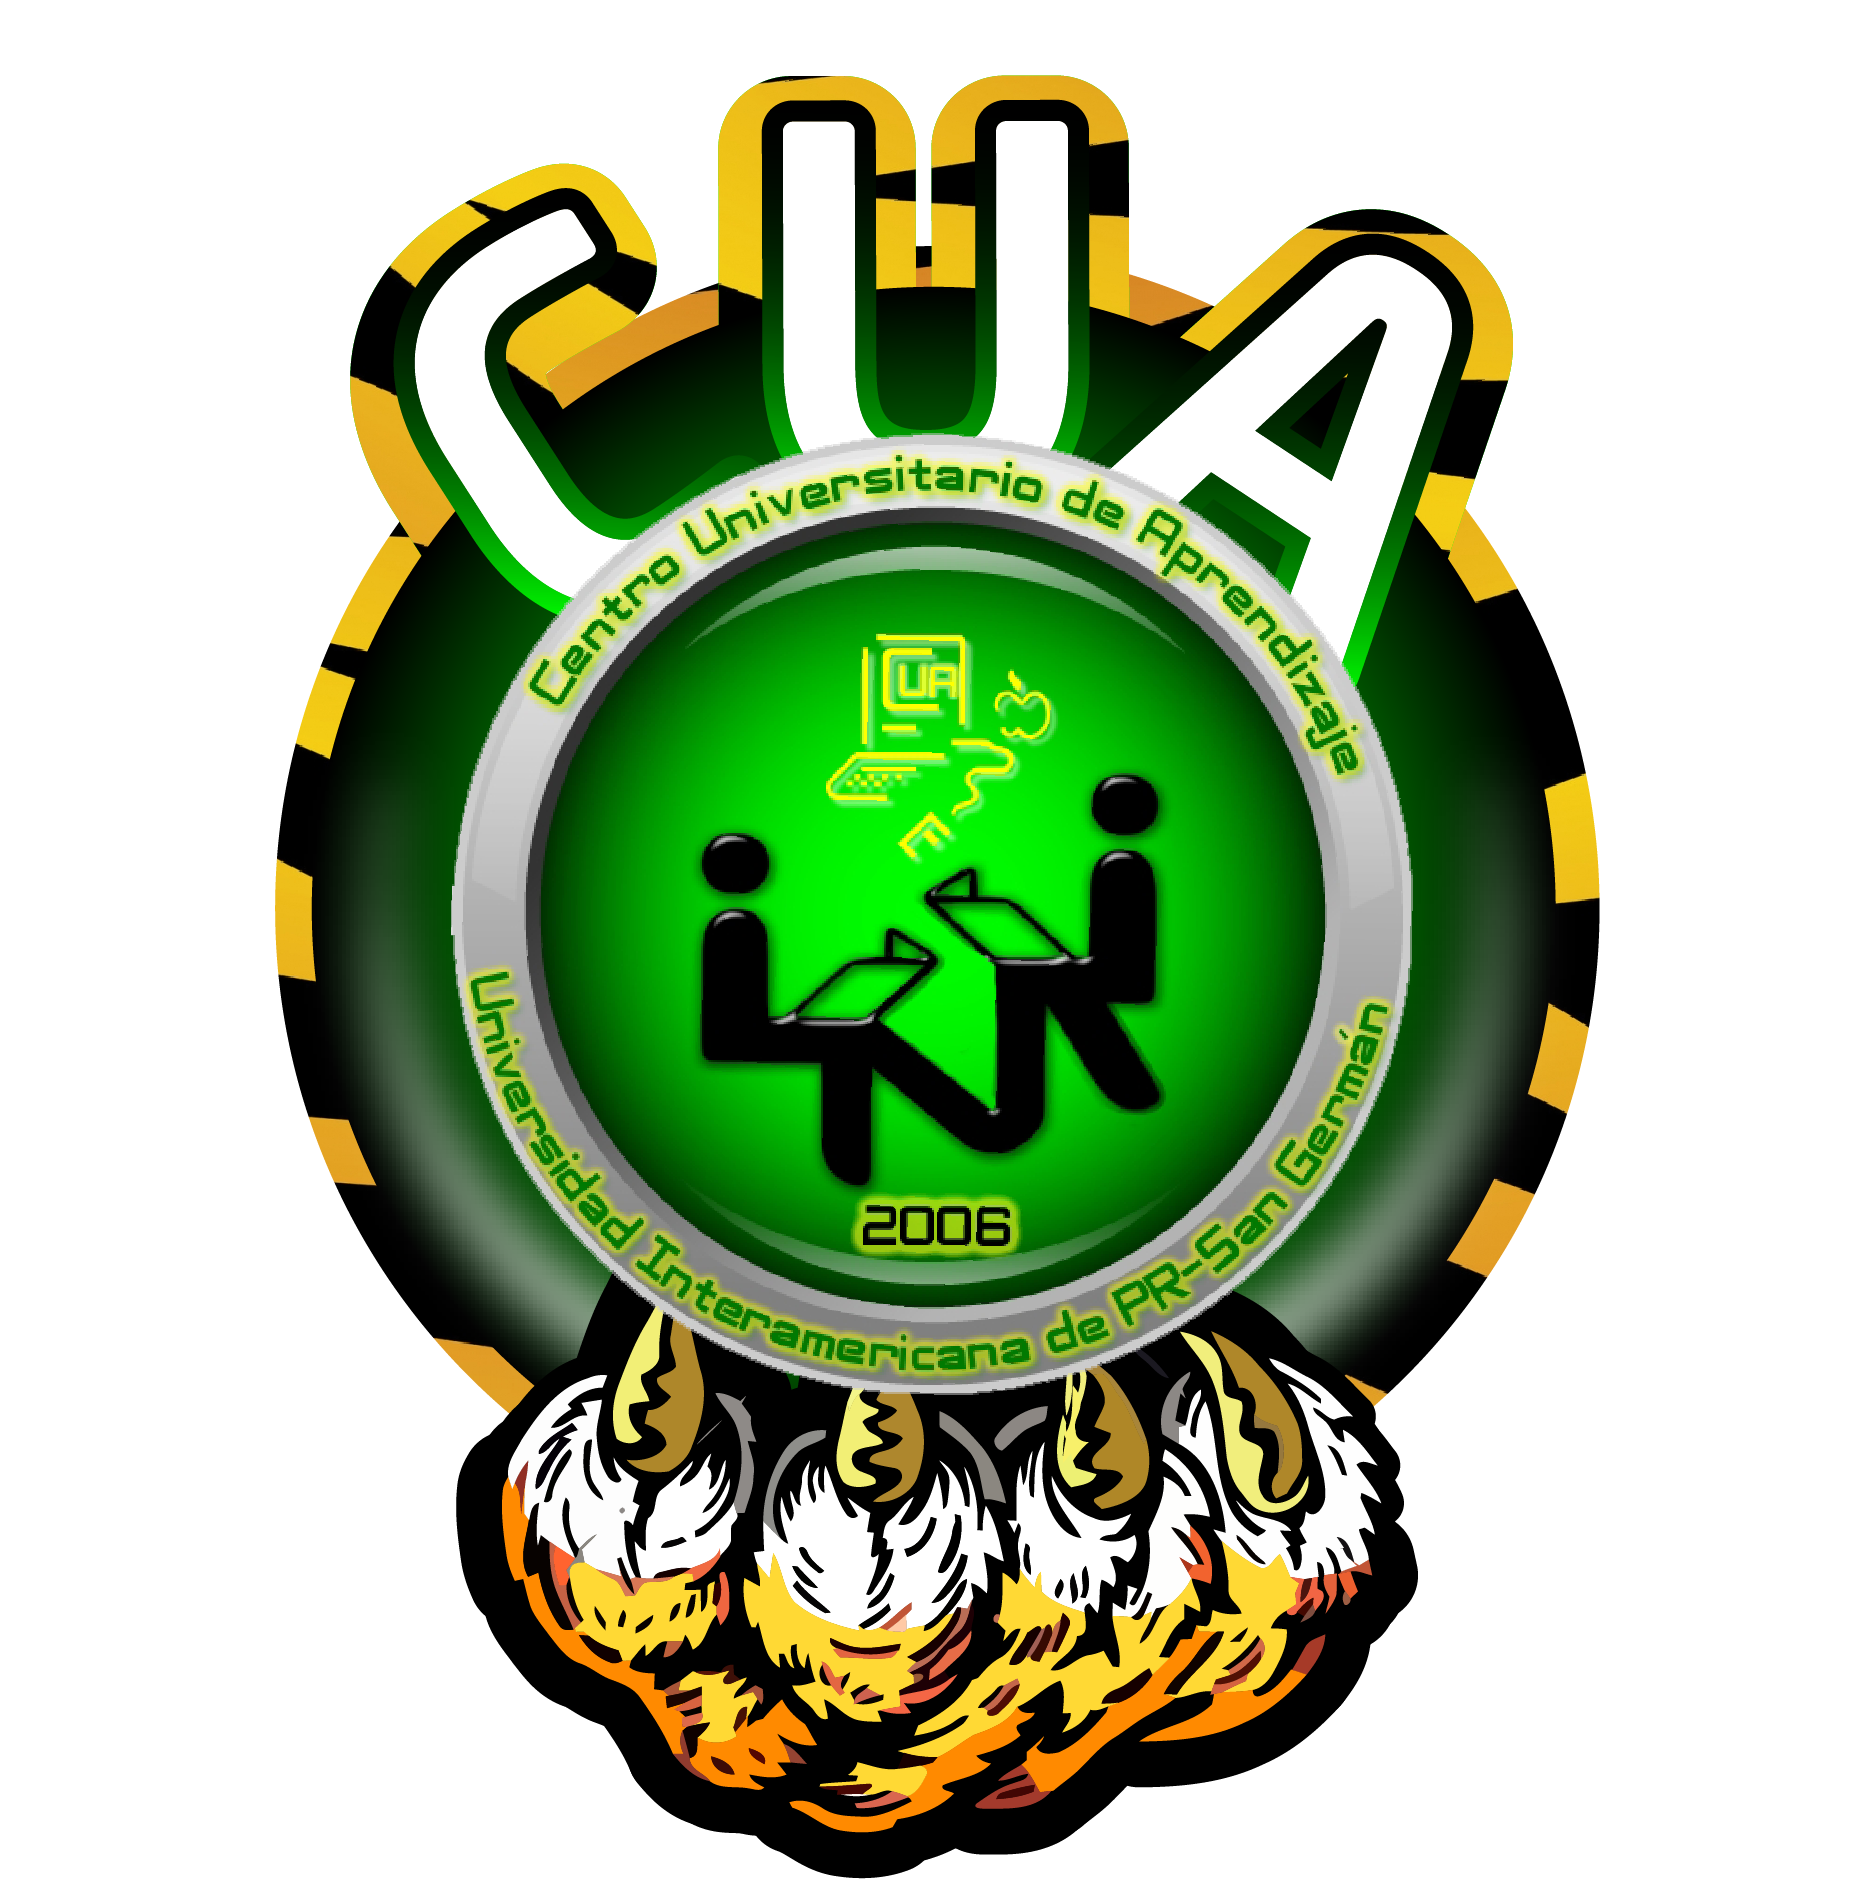 logo CUA